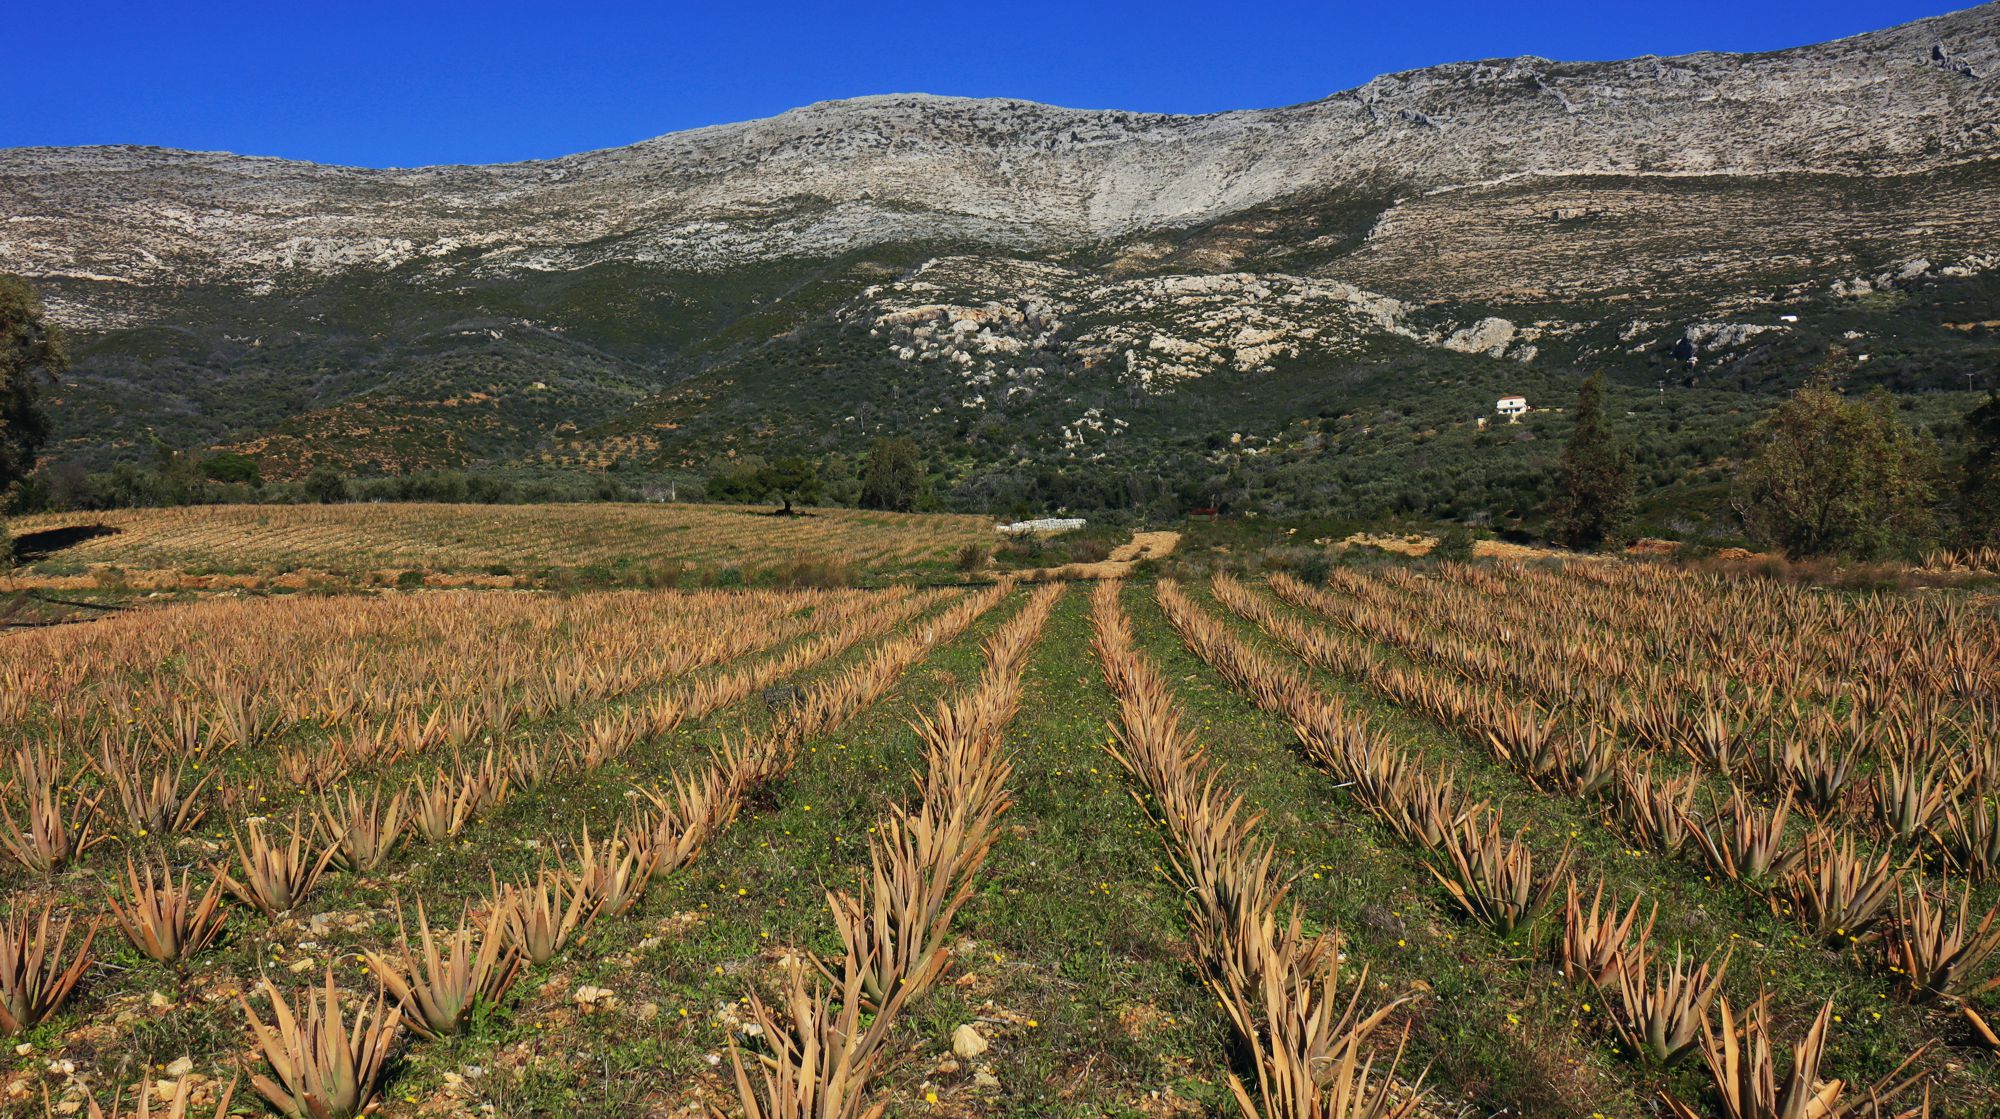 Monemvasia-Vatika topoguide: Aloe vera farmland near Agios Nikolaos